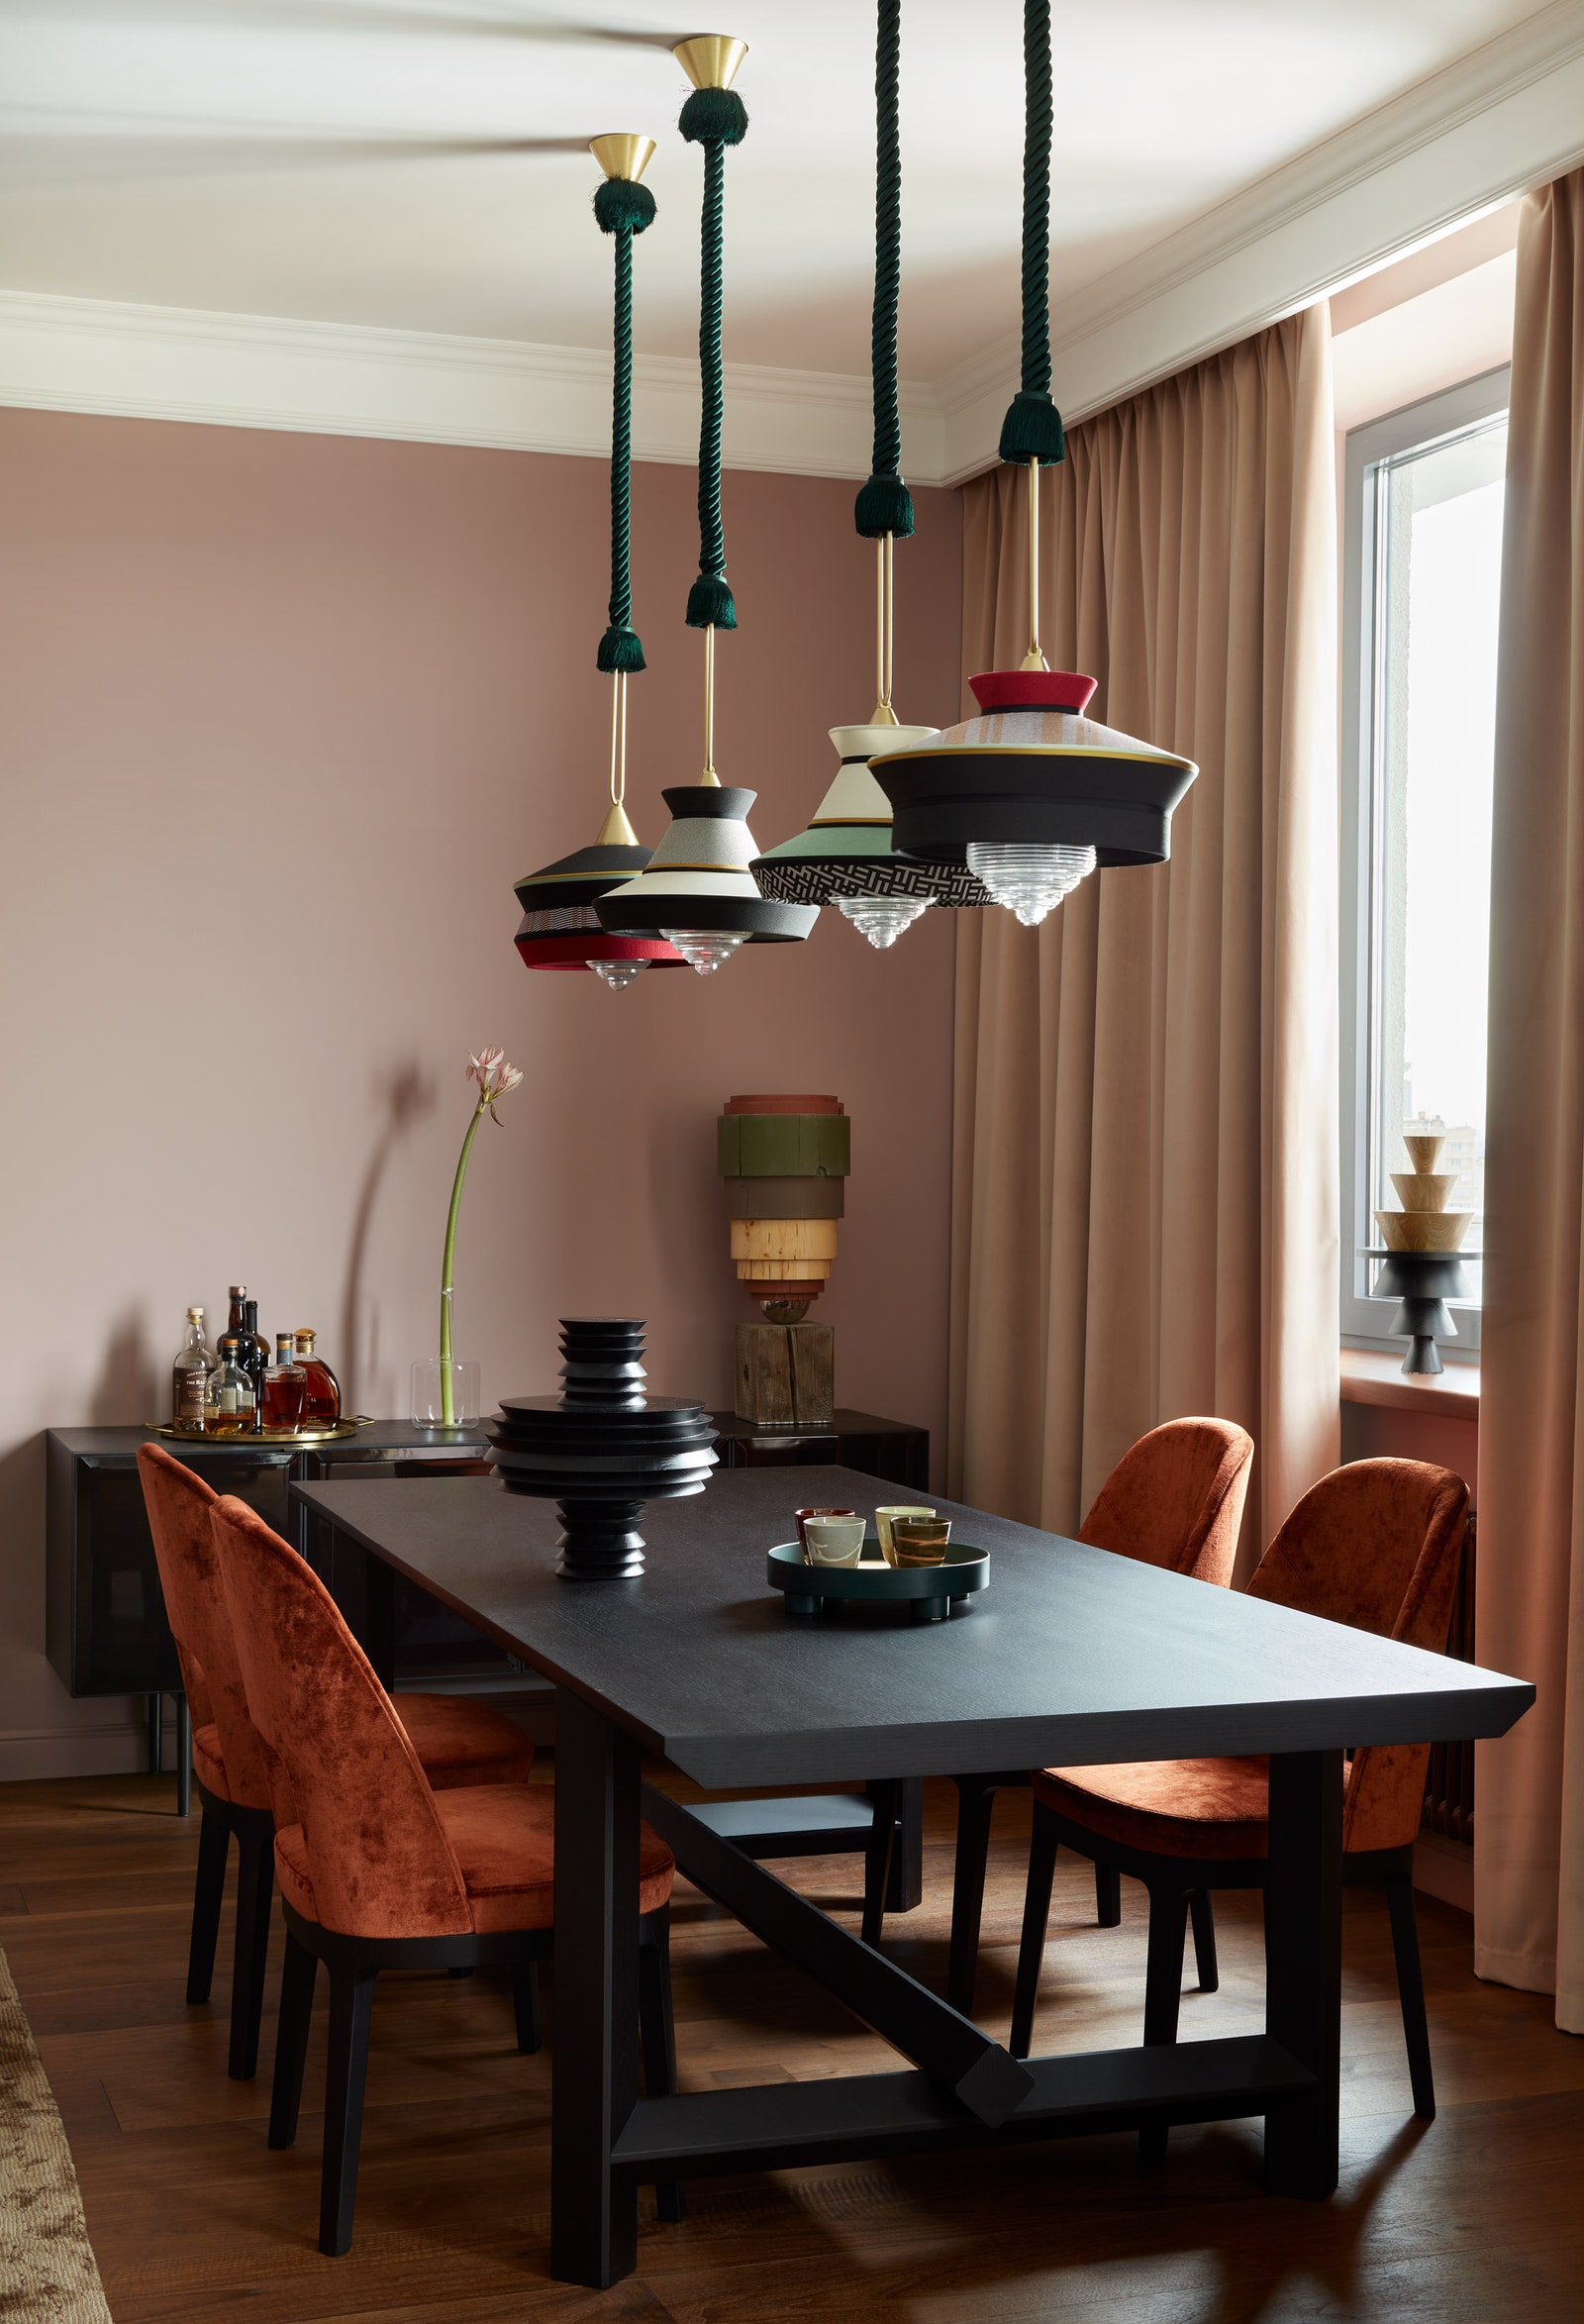 Зона столовой. Обеденный стол и кресла Mood Flexform комод Minotti светильники Contardi деревянные объекты Златы Корниловой.